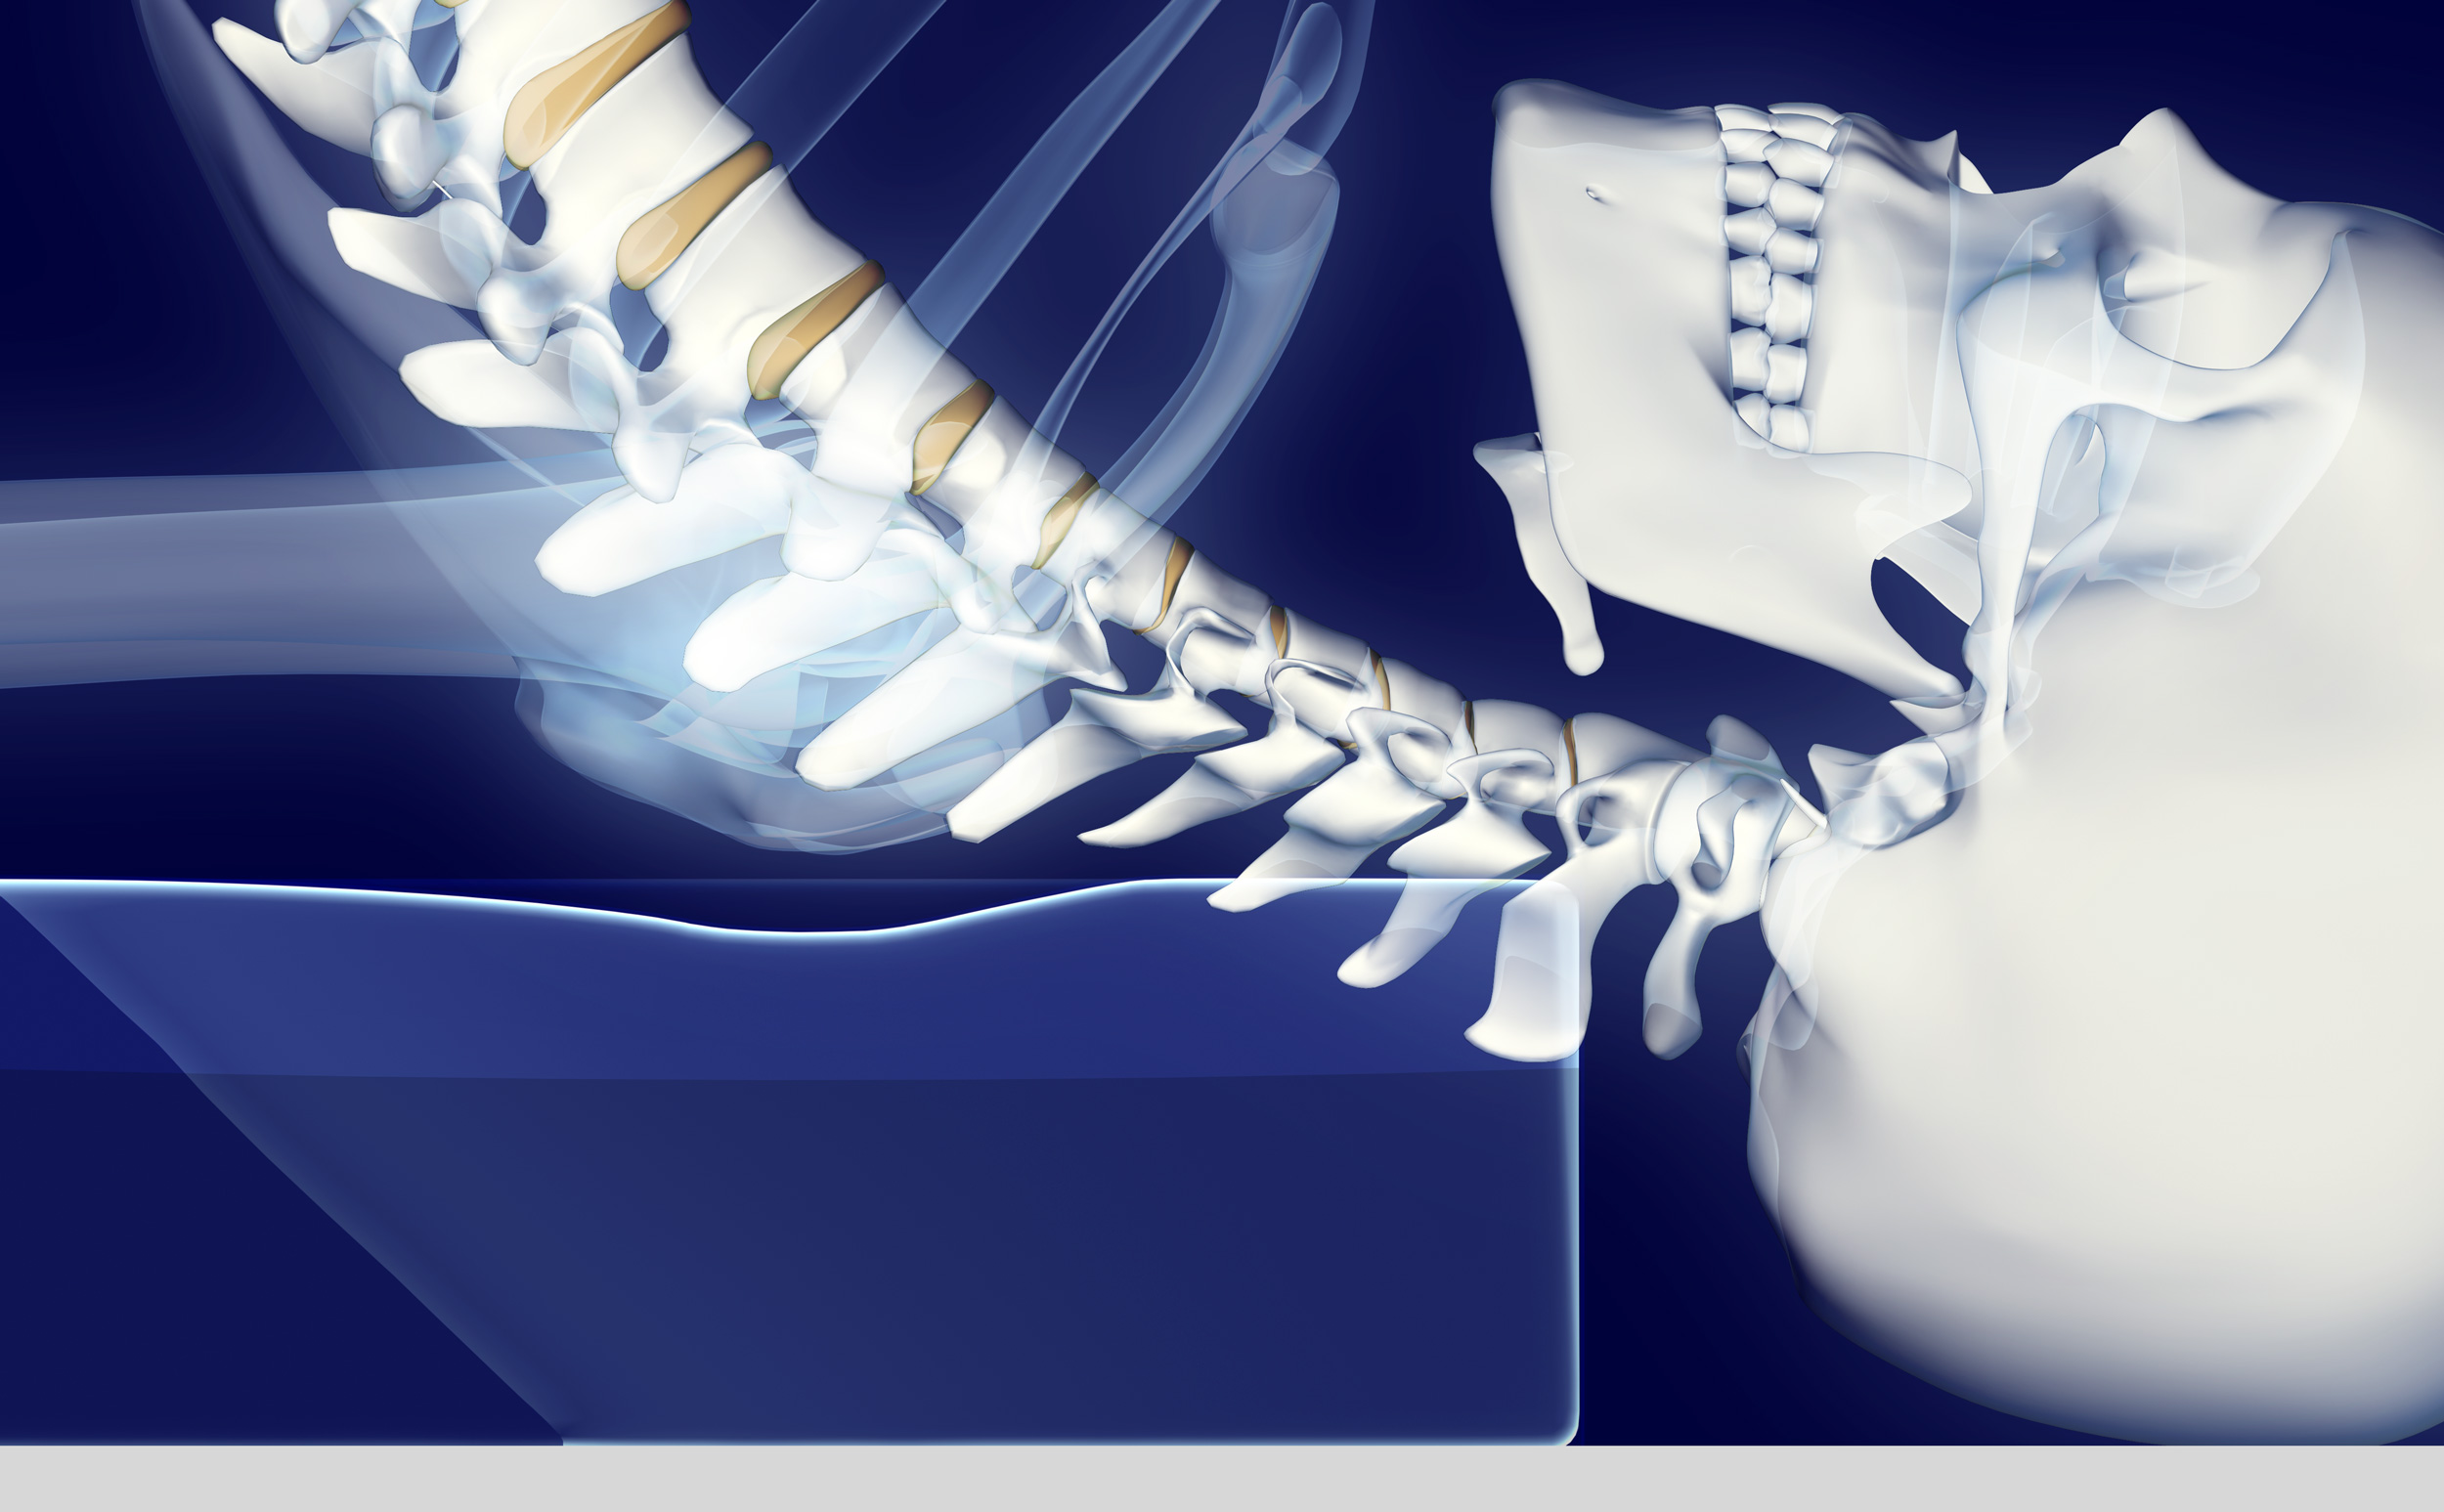 The cervical spine in shoulder stand using a Shoulder Stander